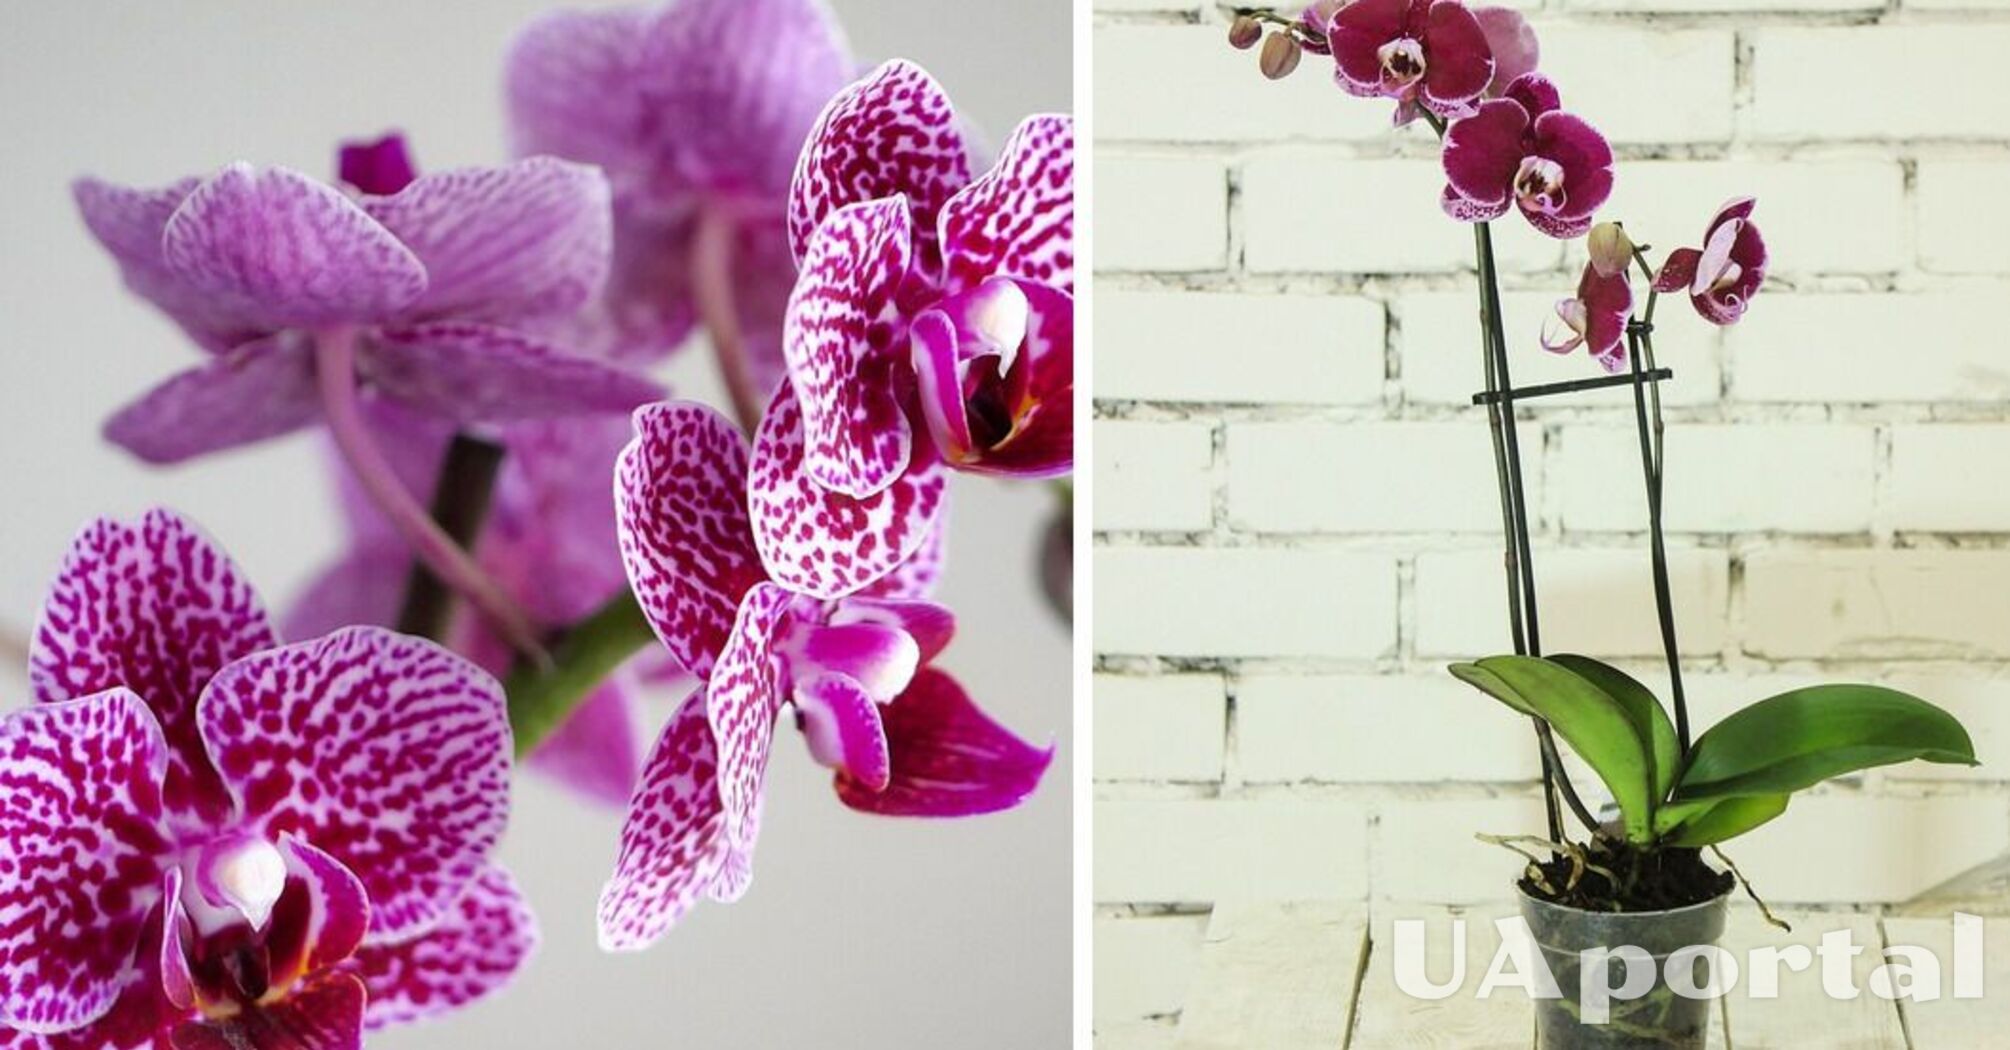 Специалисты объяснили, как привлечь орхидею к повторному цветению